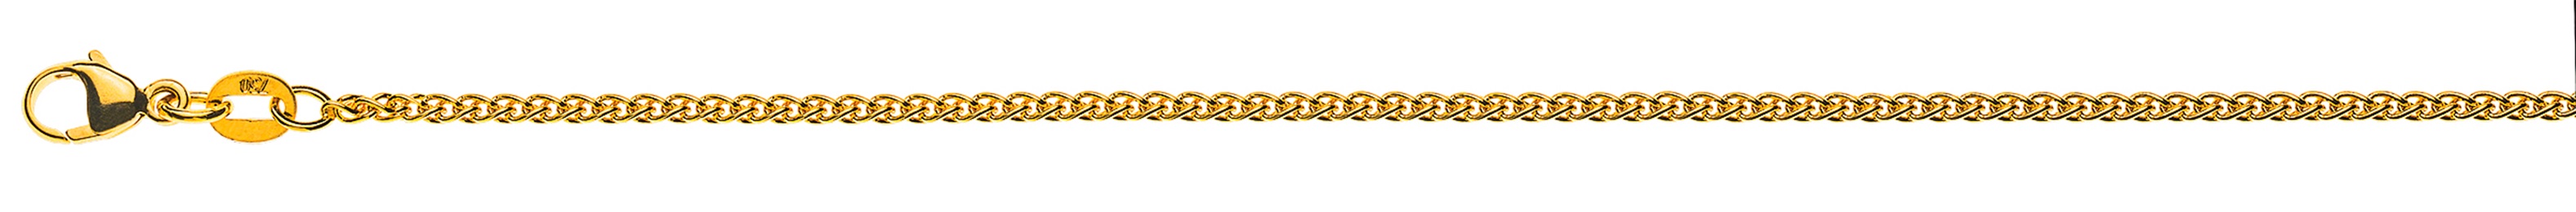 AURONOS Style Halskette Gelbgold 9K Zopfkette 38cm 1.65mm